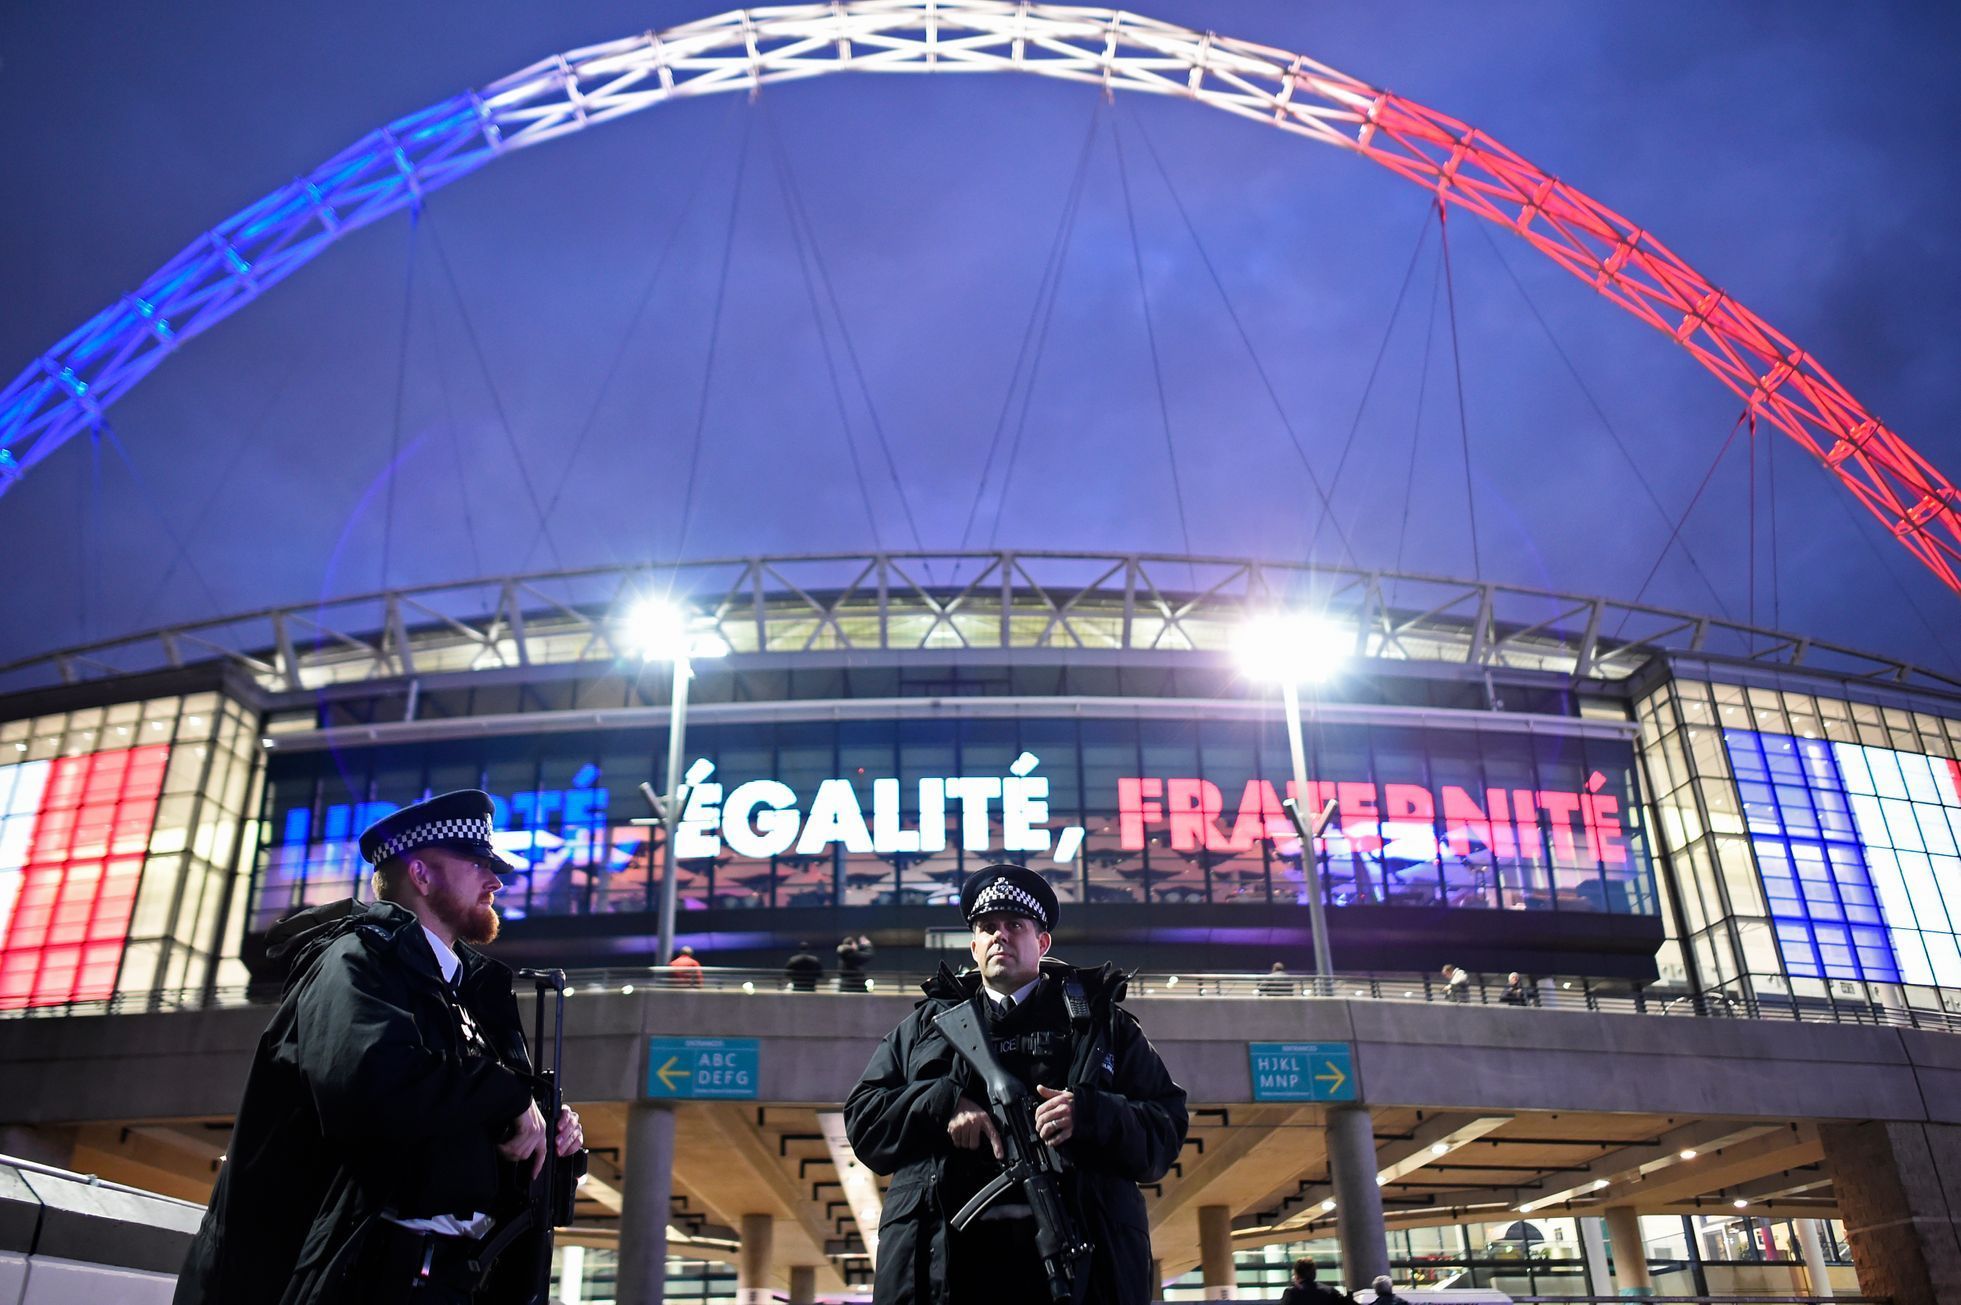 Stadion ve Wembley před fotbalovým zápasem Anglie - Francie